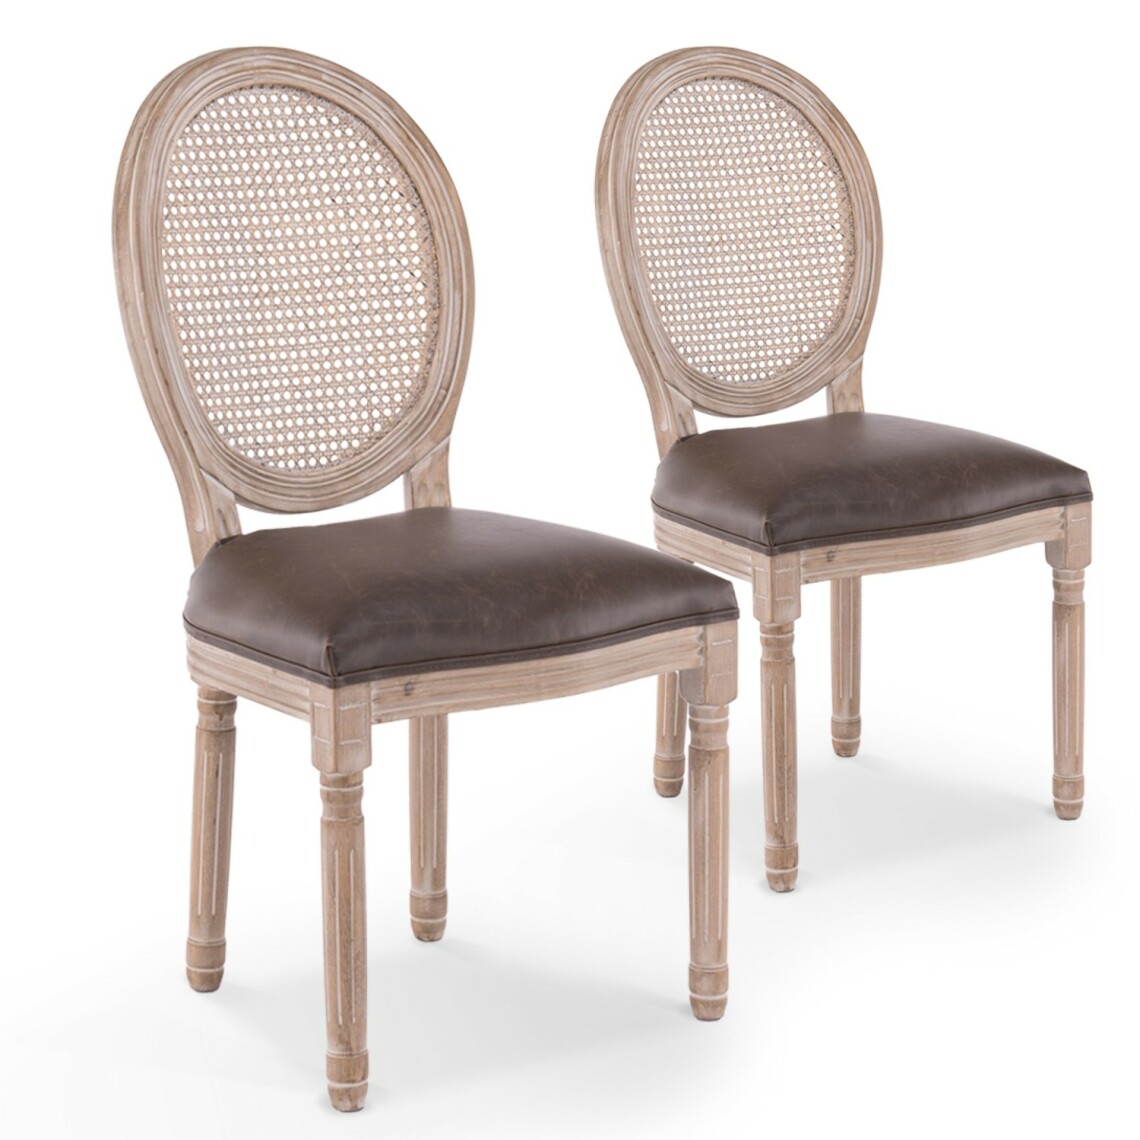 marque generique - Lot de 2 chaises médaillon Louis XVI Cannage Rotin vintage - Chaises